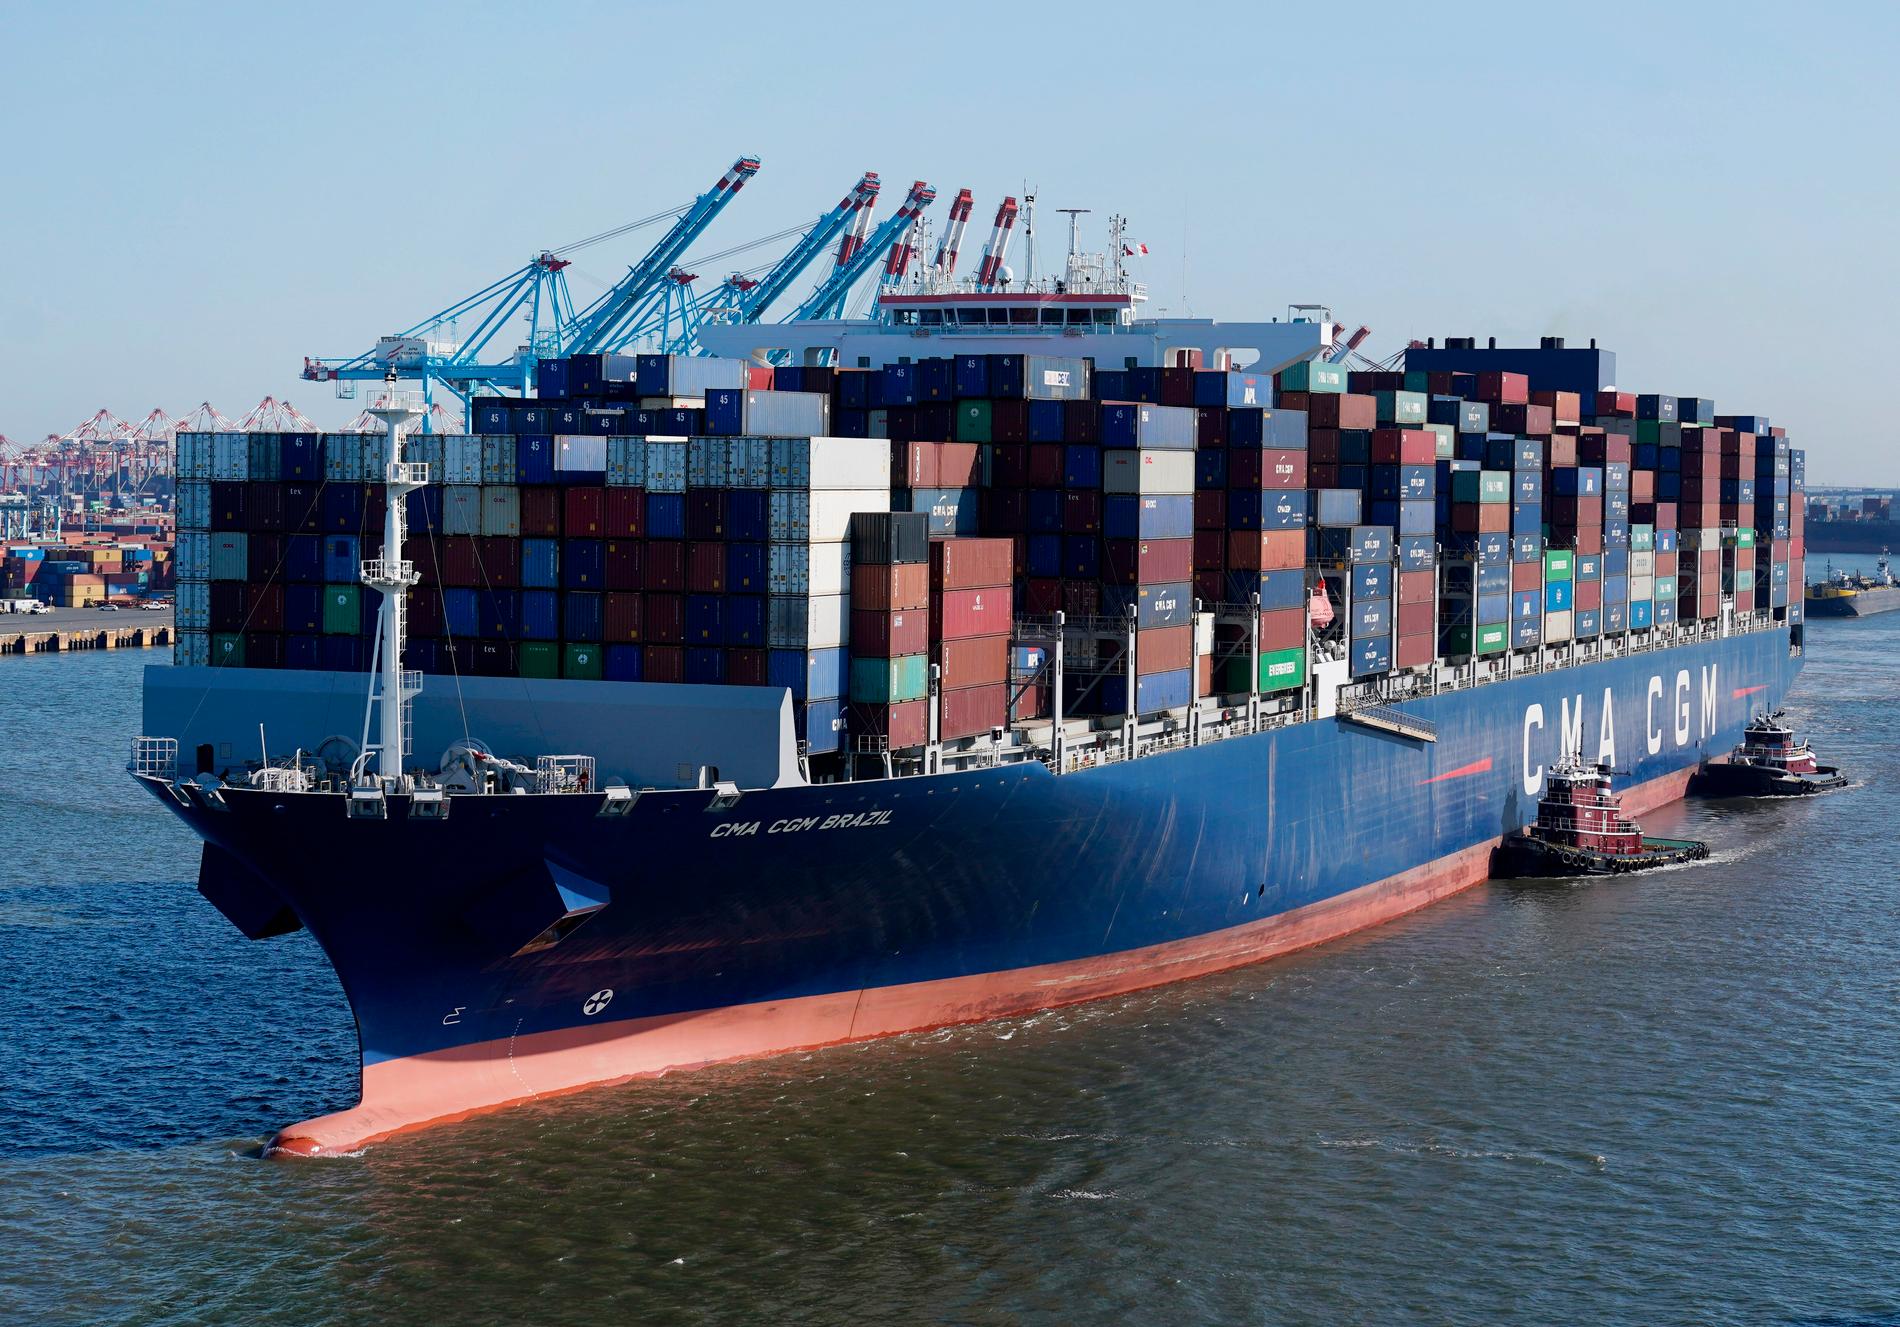 Totalt fraktas omkring 200 miljoner containrar över världshaven varje år.